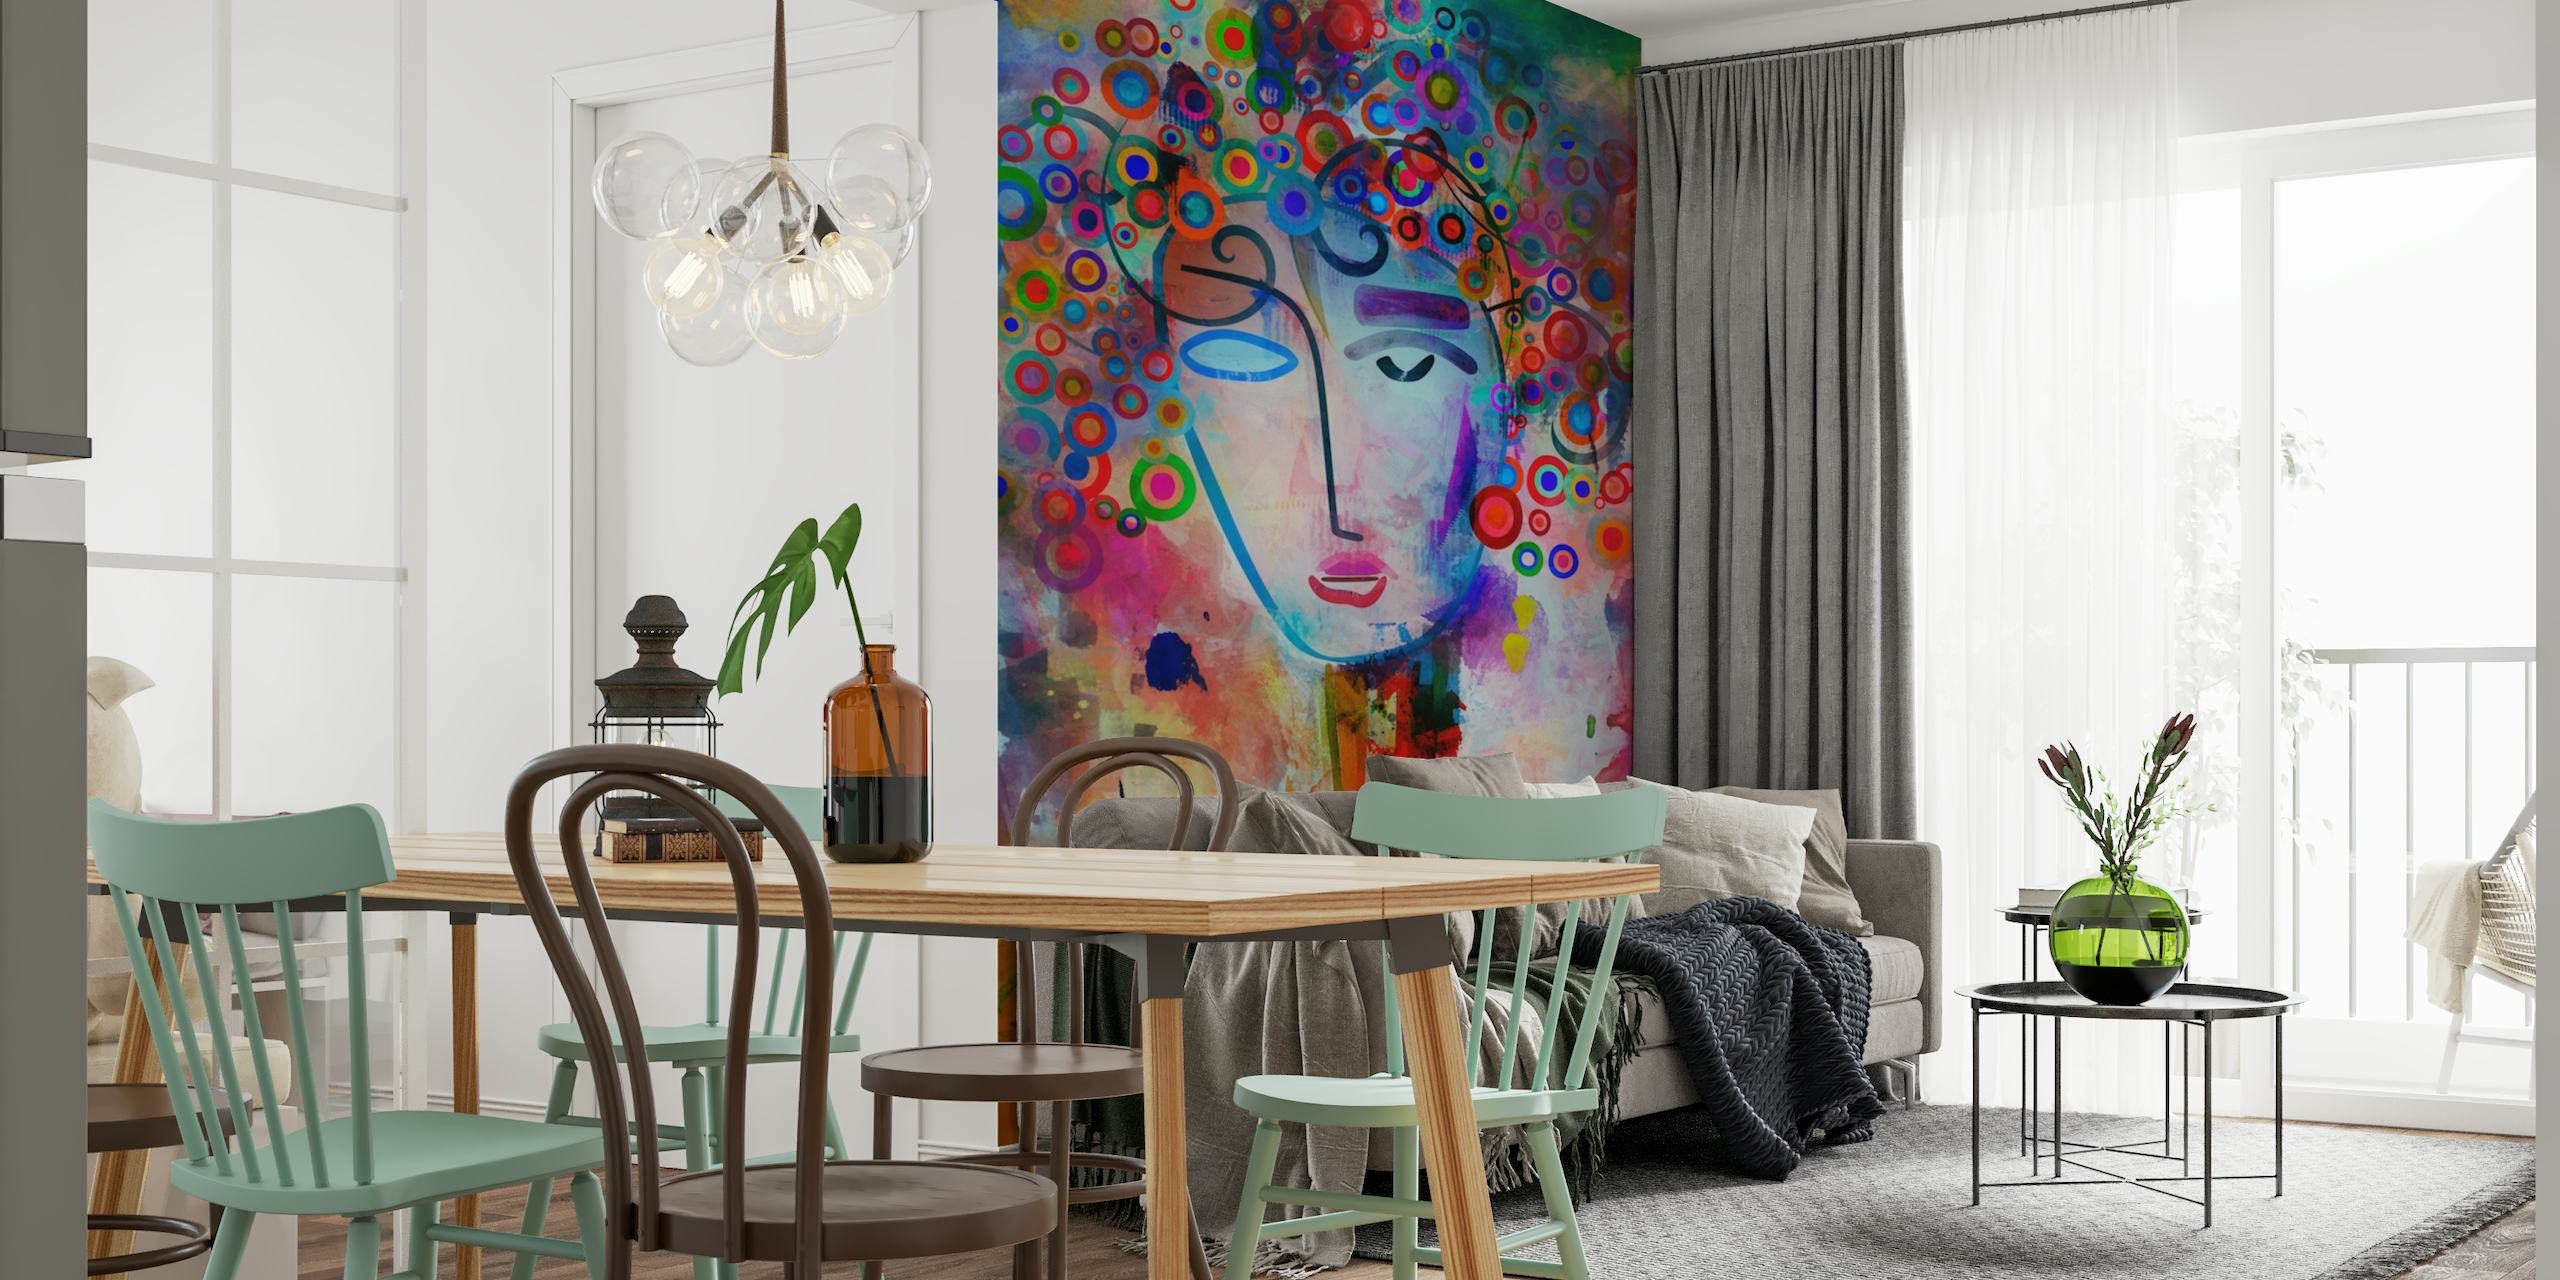 Abstrakt farverigt vægmaleri med en fantasifuld repræsentation af et sind i en brainstormsession